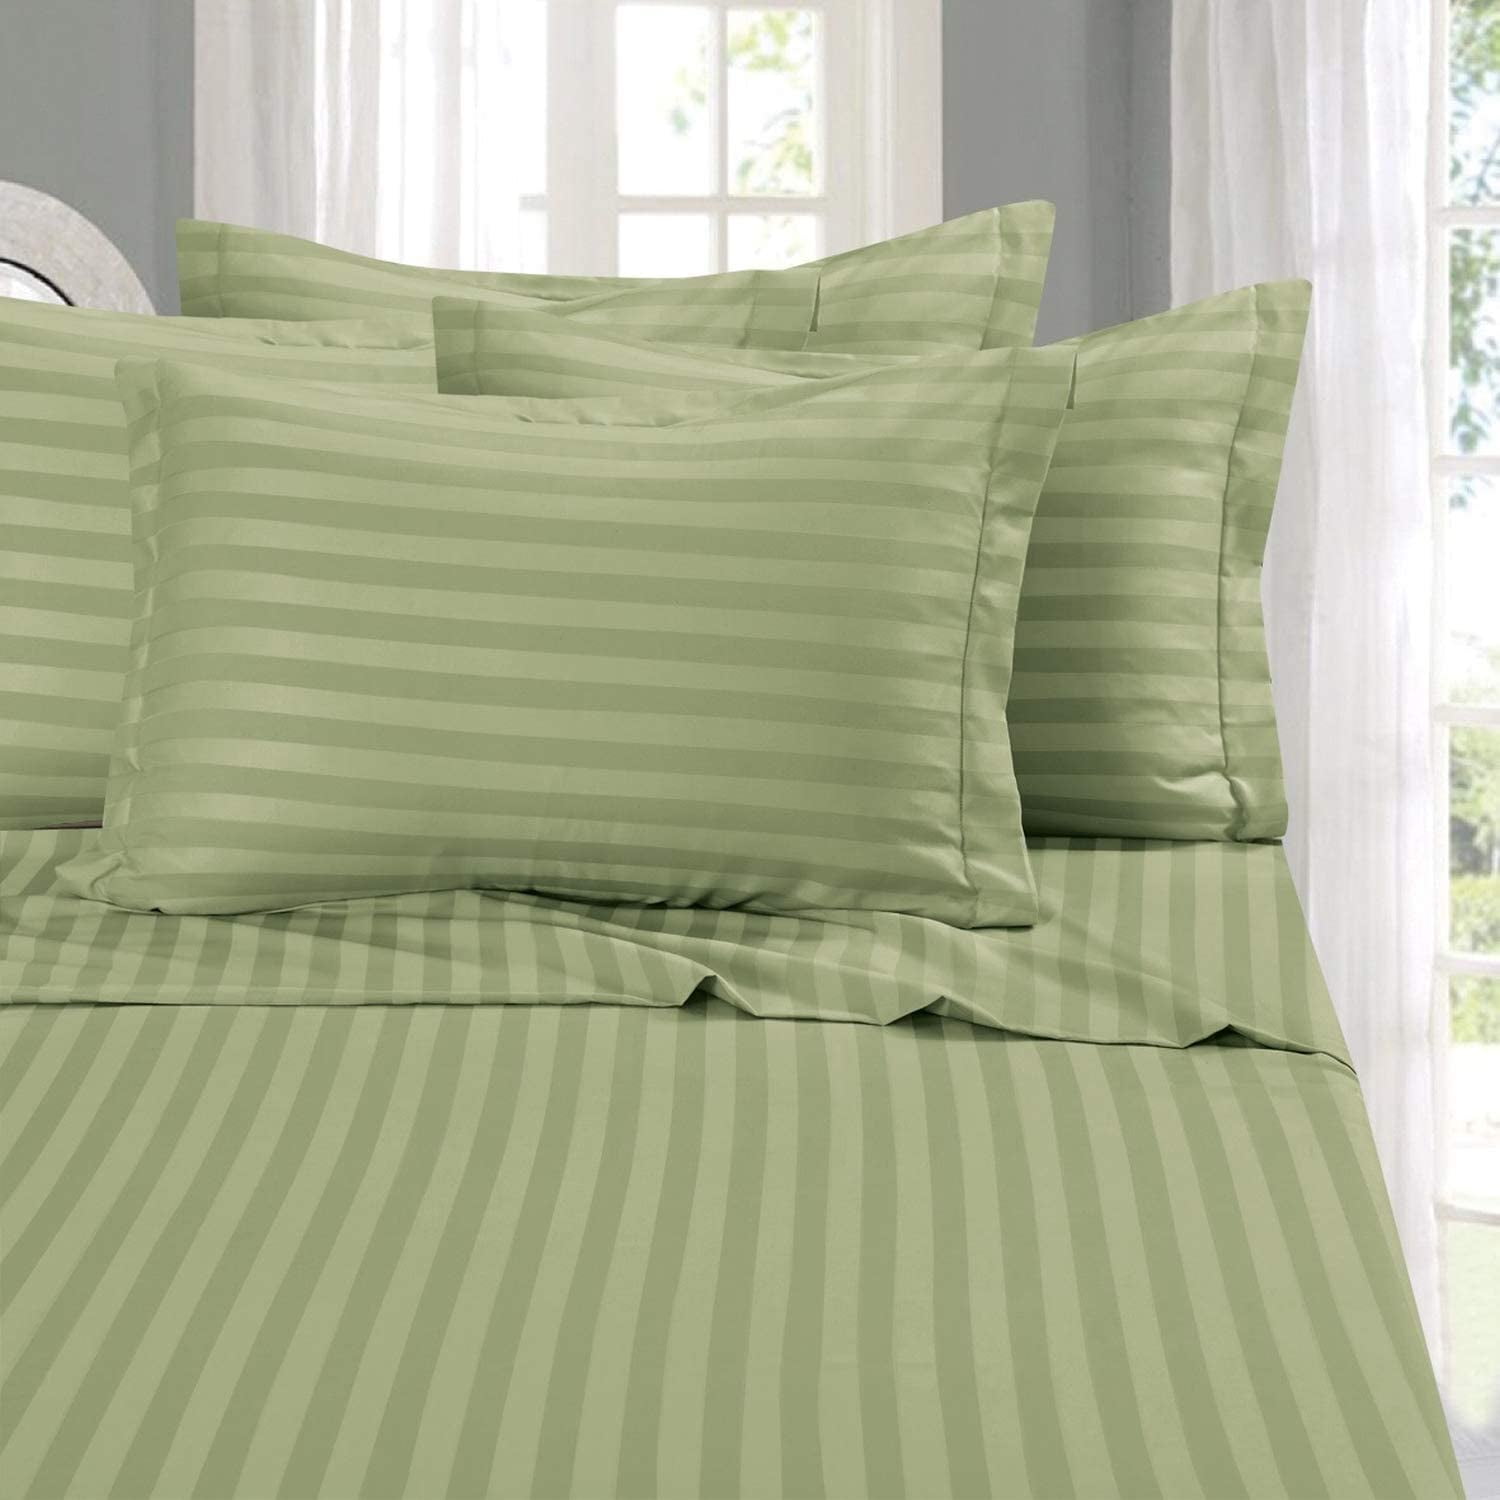 Queen Aspire Linens Cotton Damask Stripe 4 Piece Sheet Set Mint Green 